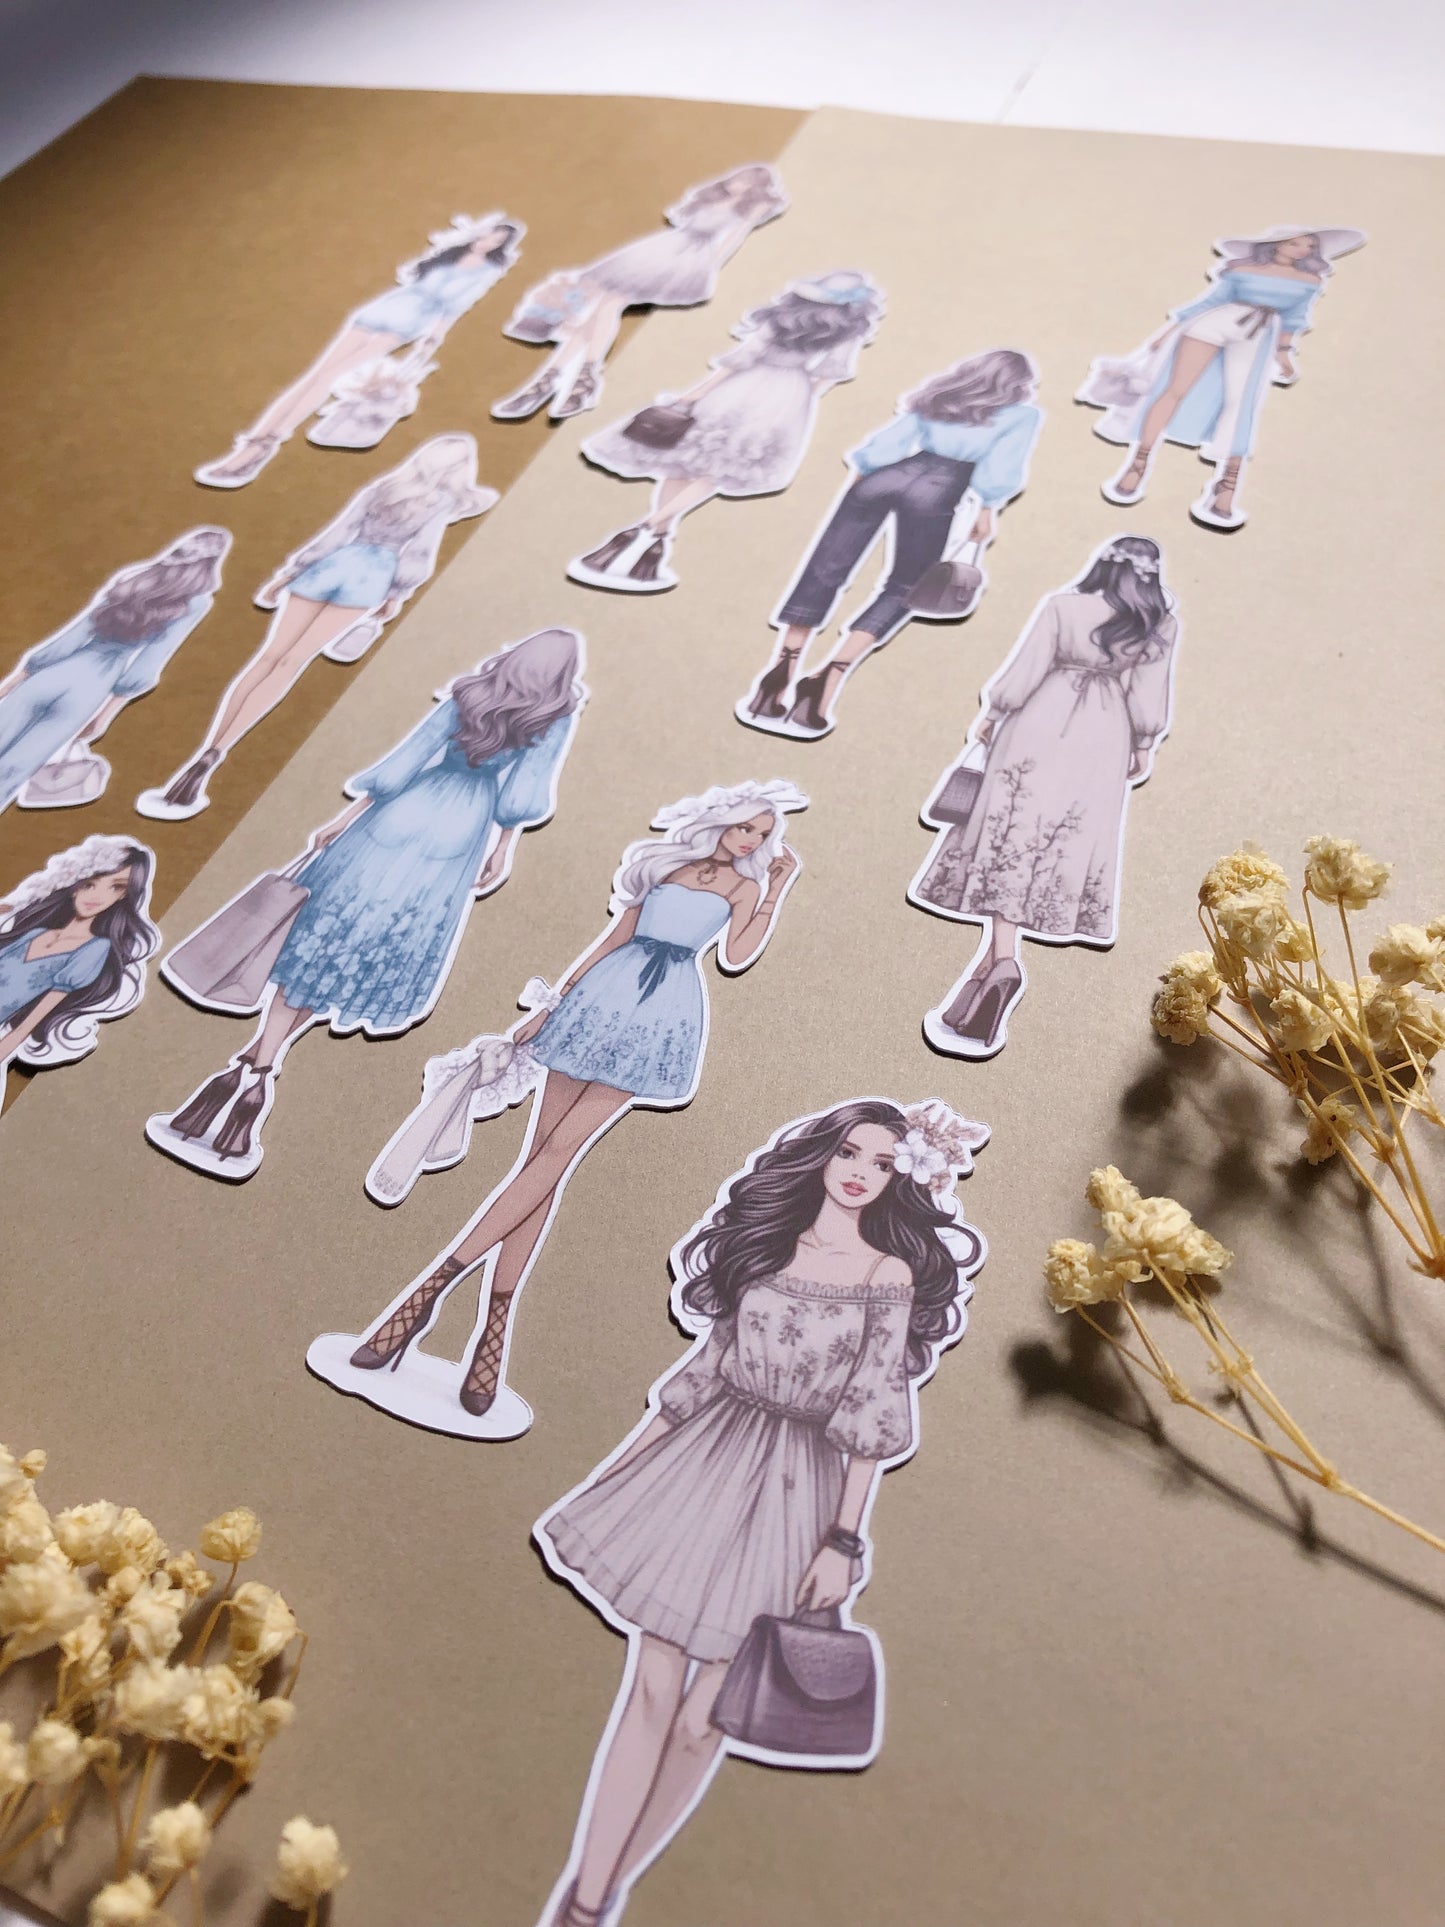 "Blue Spring Girls" Die Cut Sticker Pack